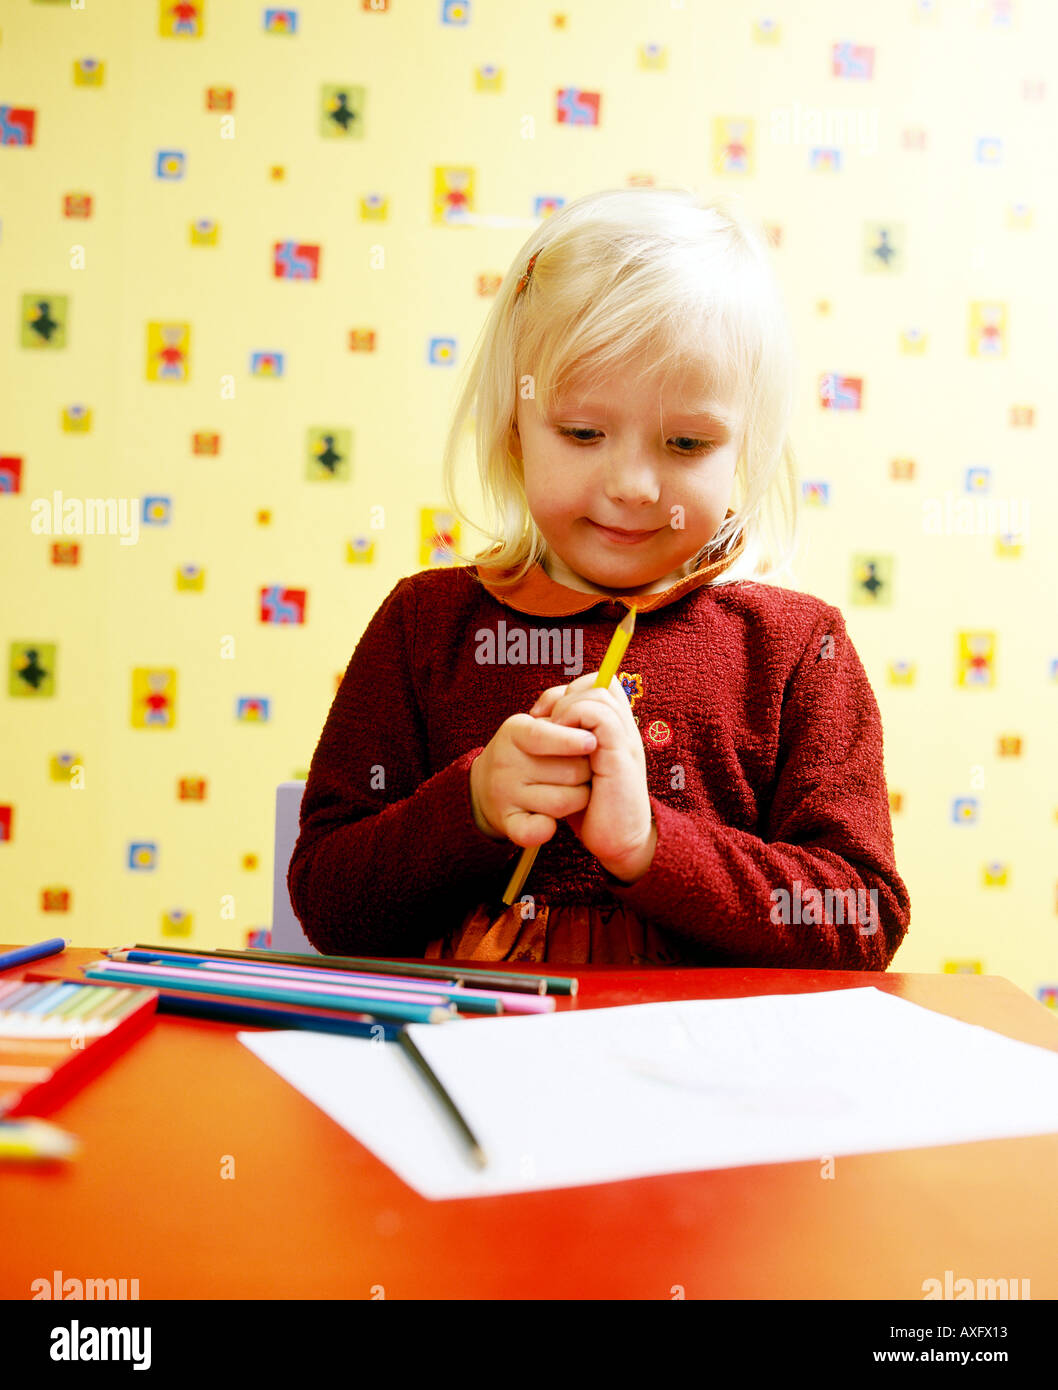 Piscine télévision prix mur de papier design crée petite fille blonde 510 sourire souriant jouer fun feuilles craies craie dessiner peindre Banque D'Images